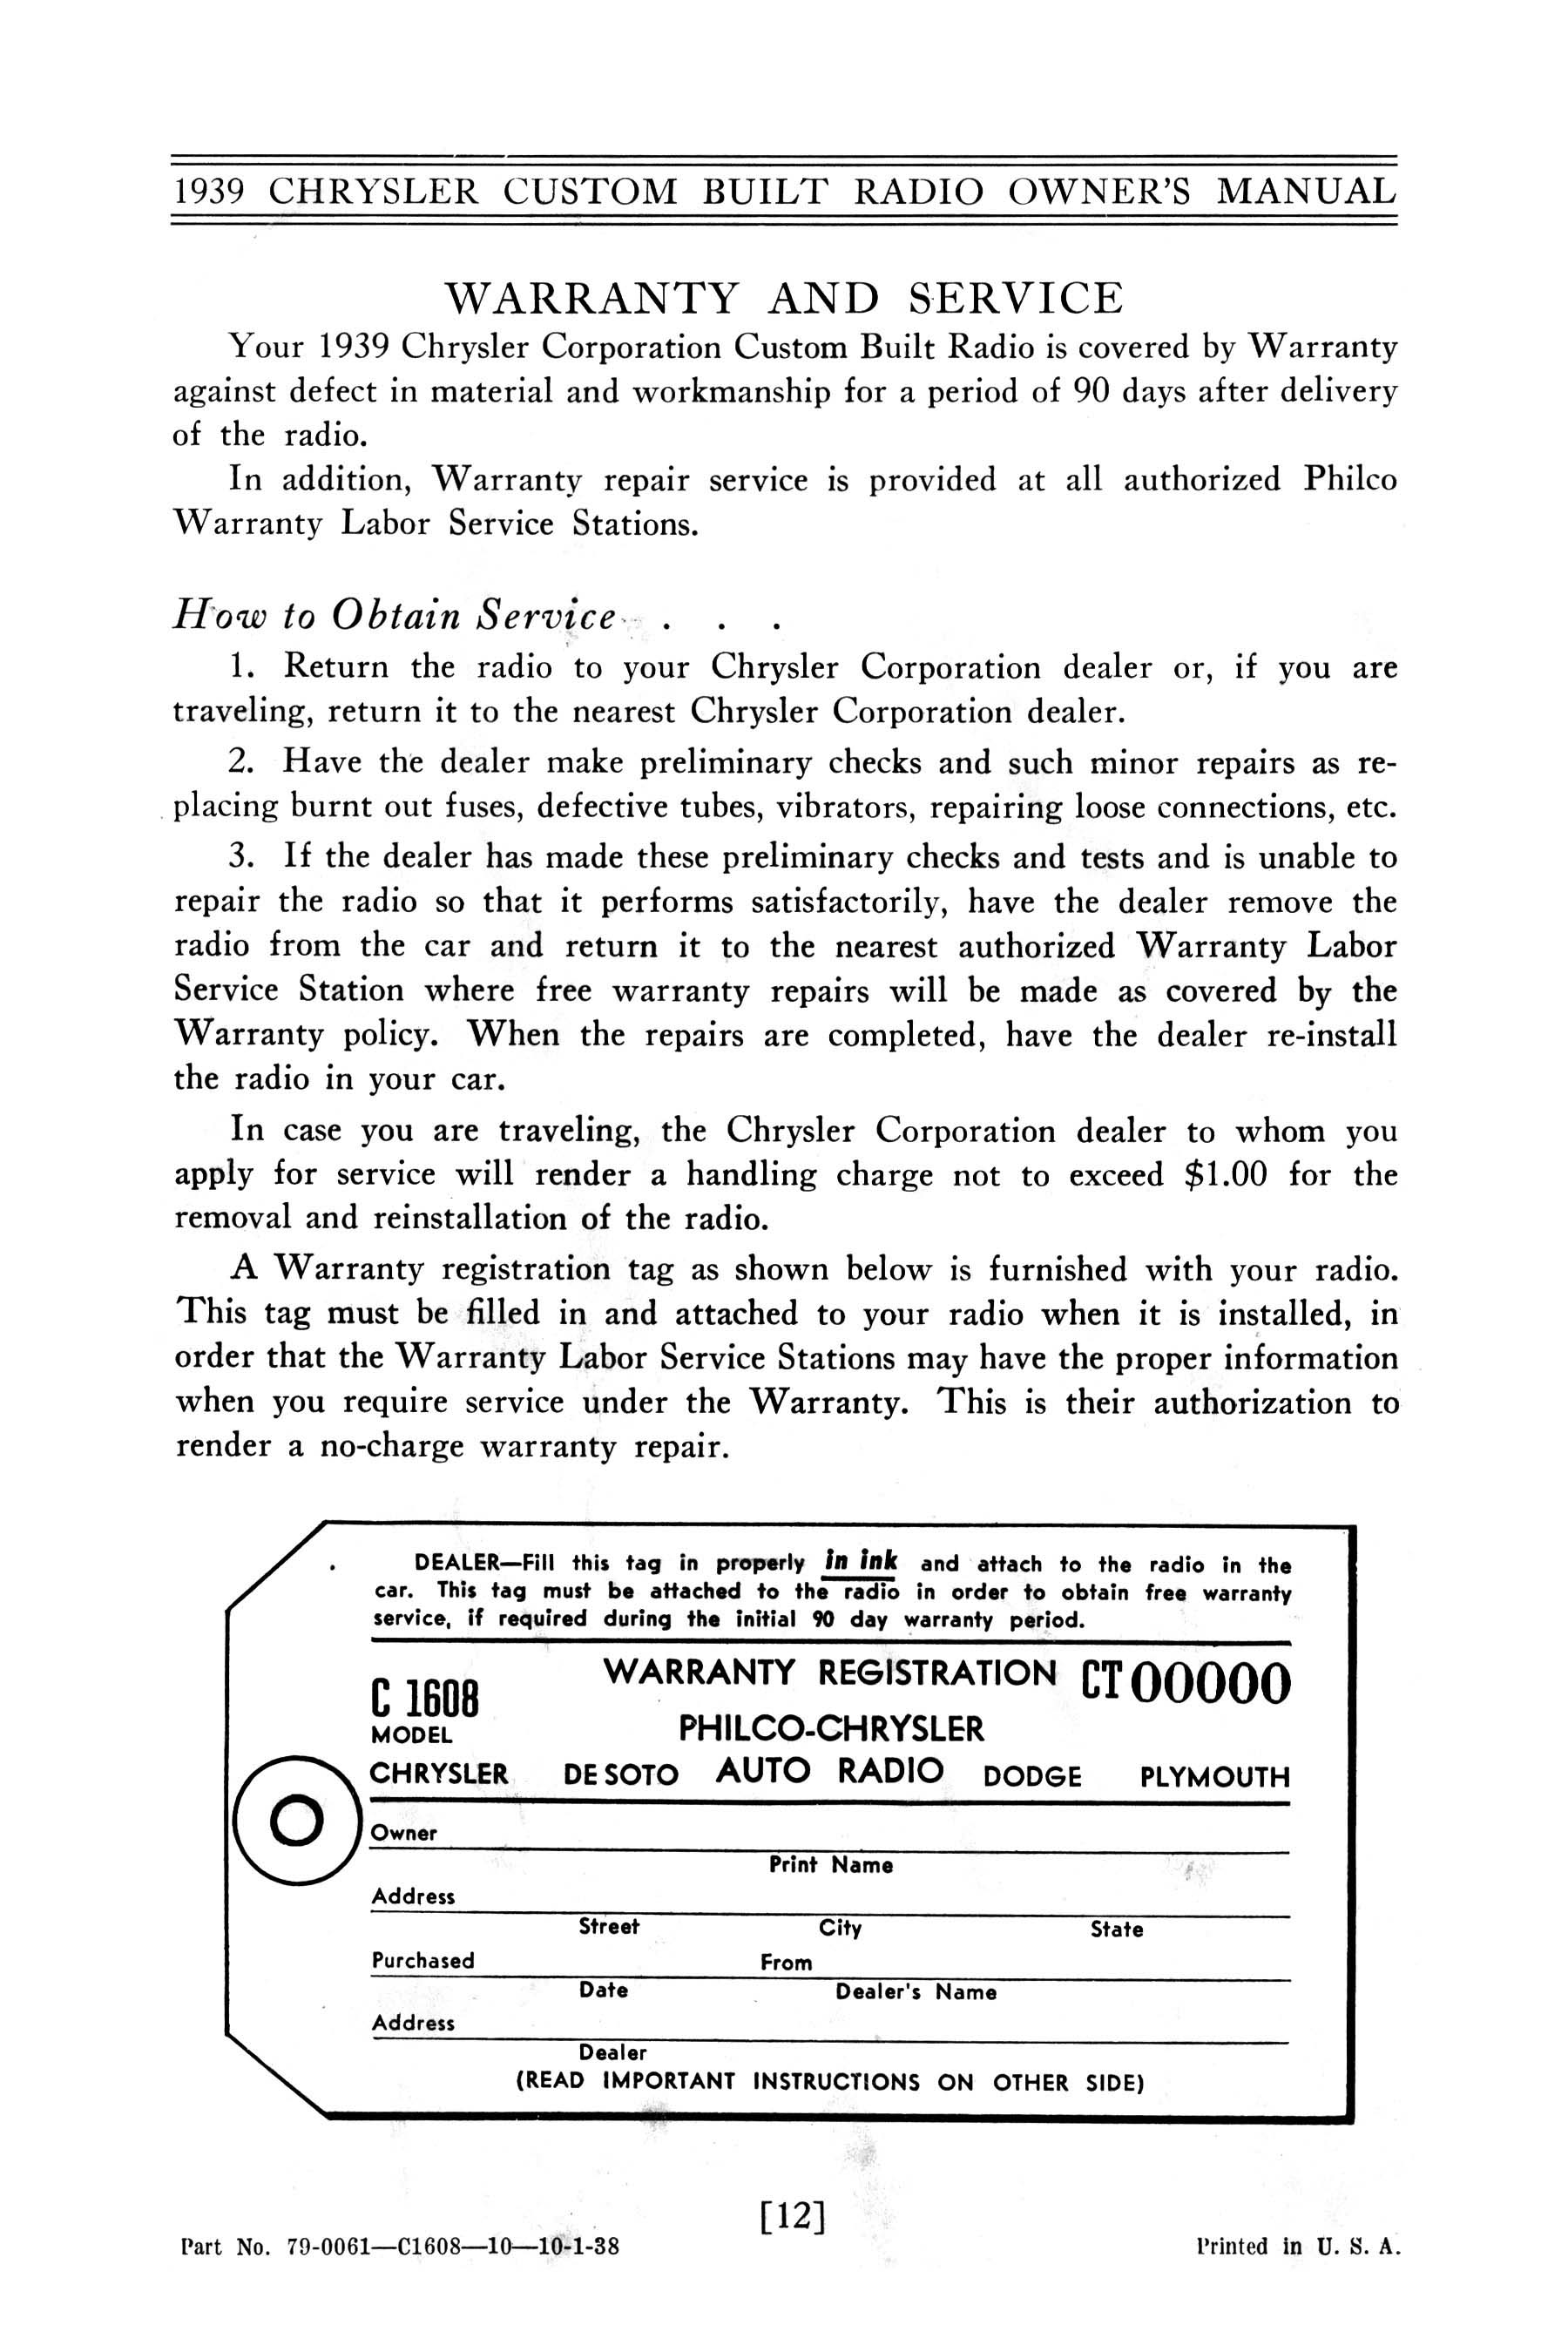 1939_Chrysler_Radio_Manual-12